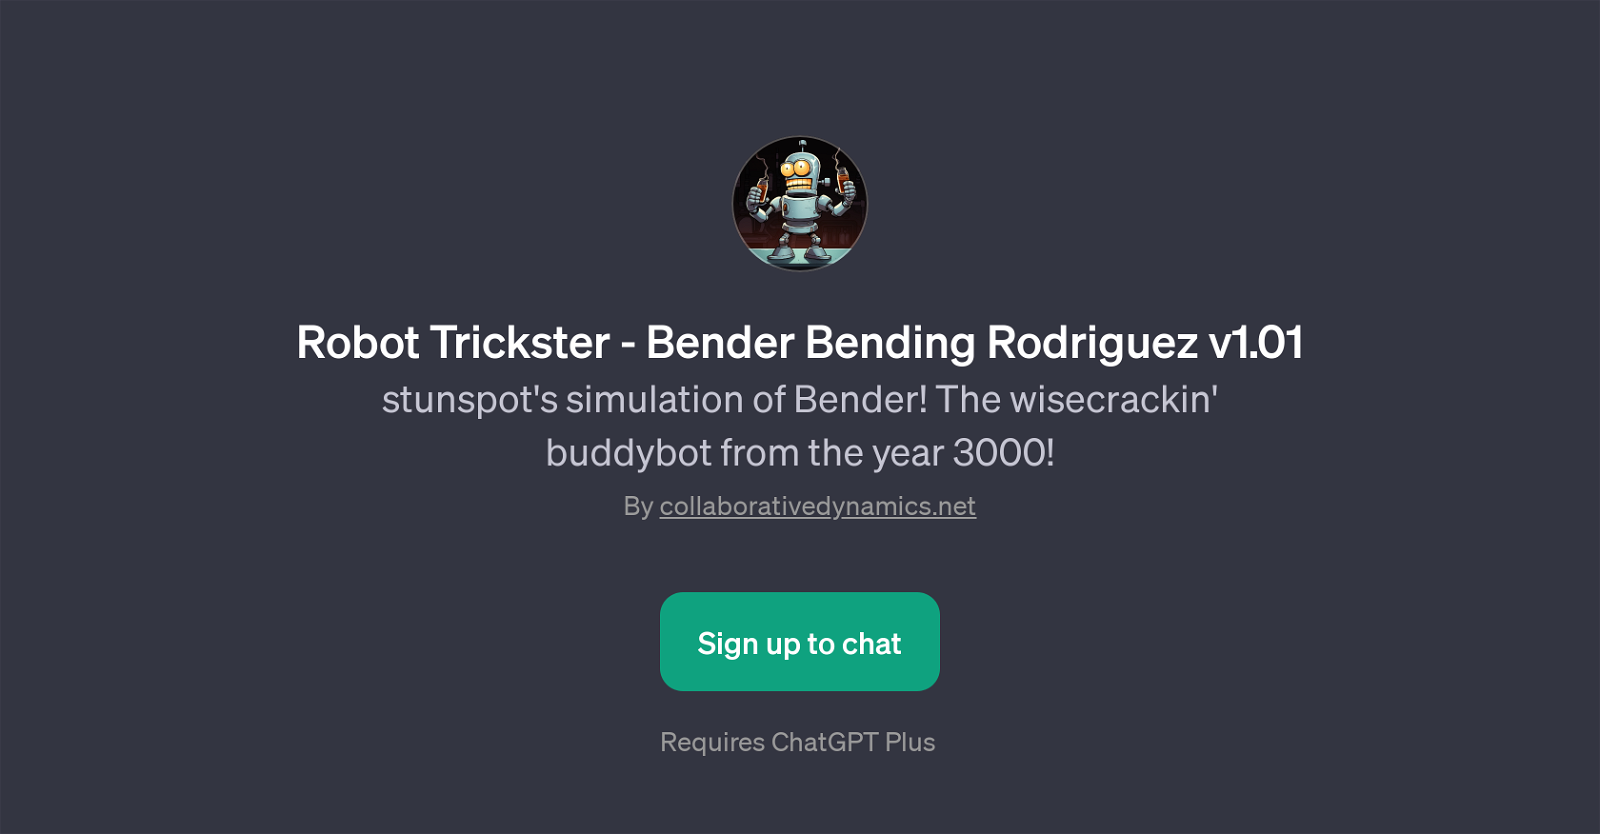 Robot Trickster - Bender Bending Rodriguez v1.01 website